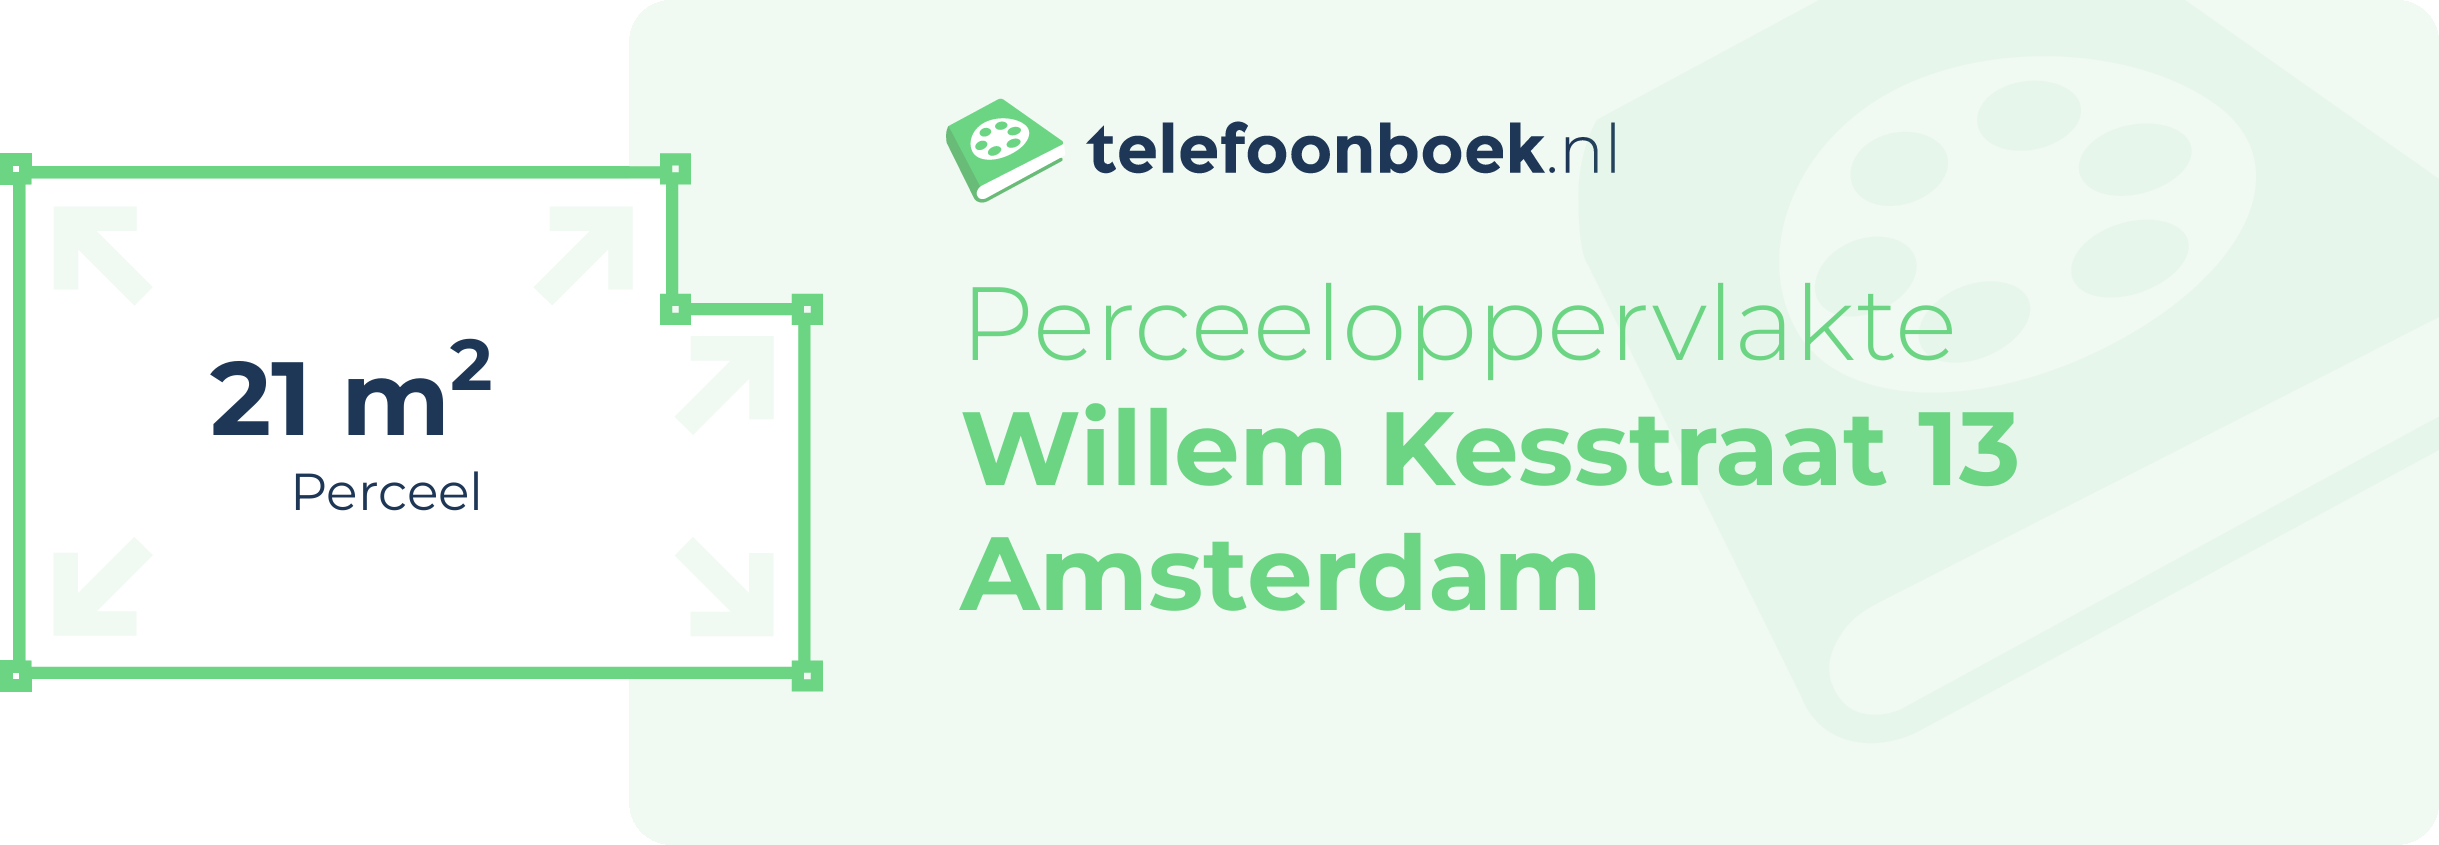 Perceeloppervlakte Willem Kesstraat 13 Amsterdam